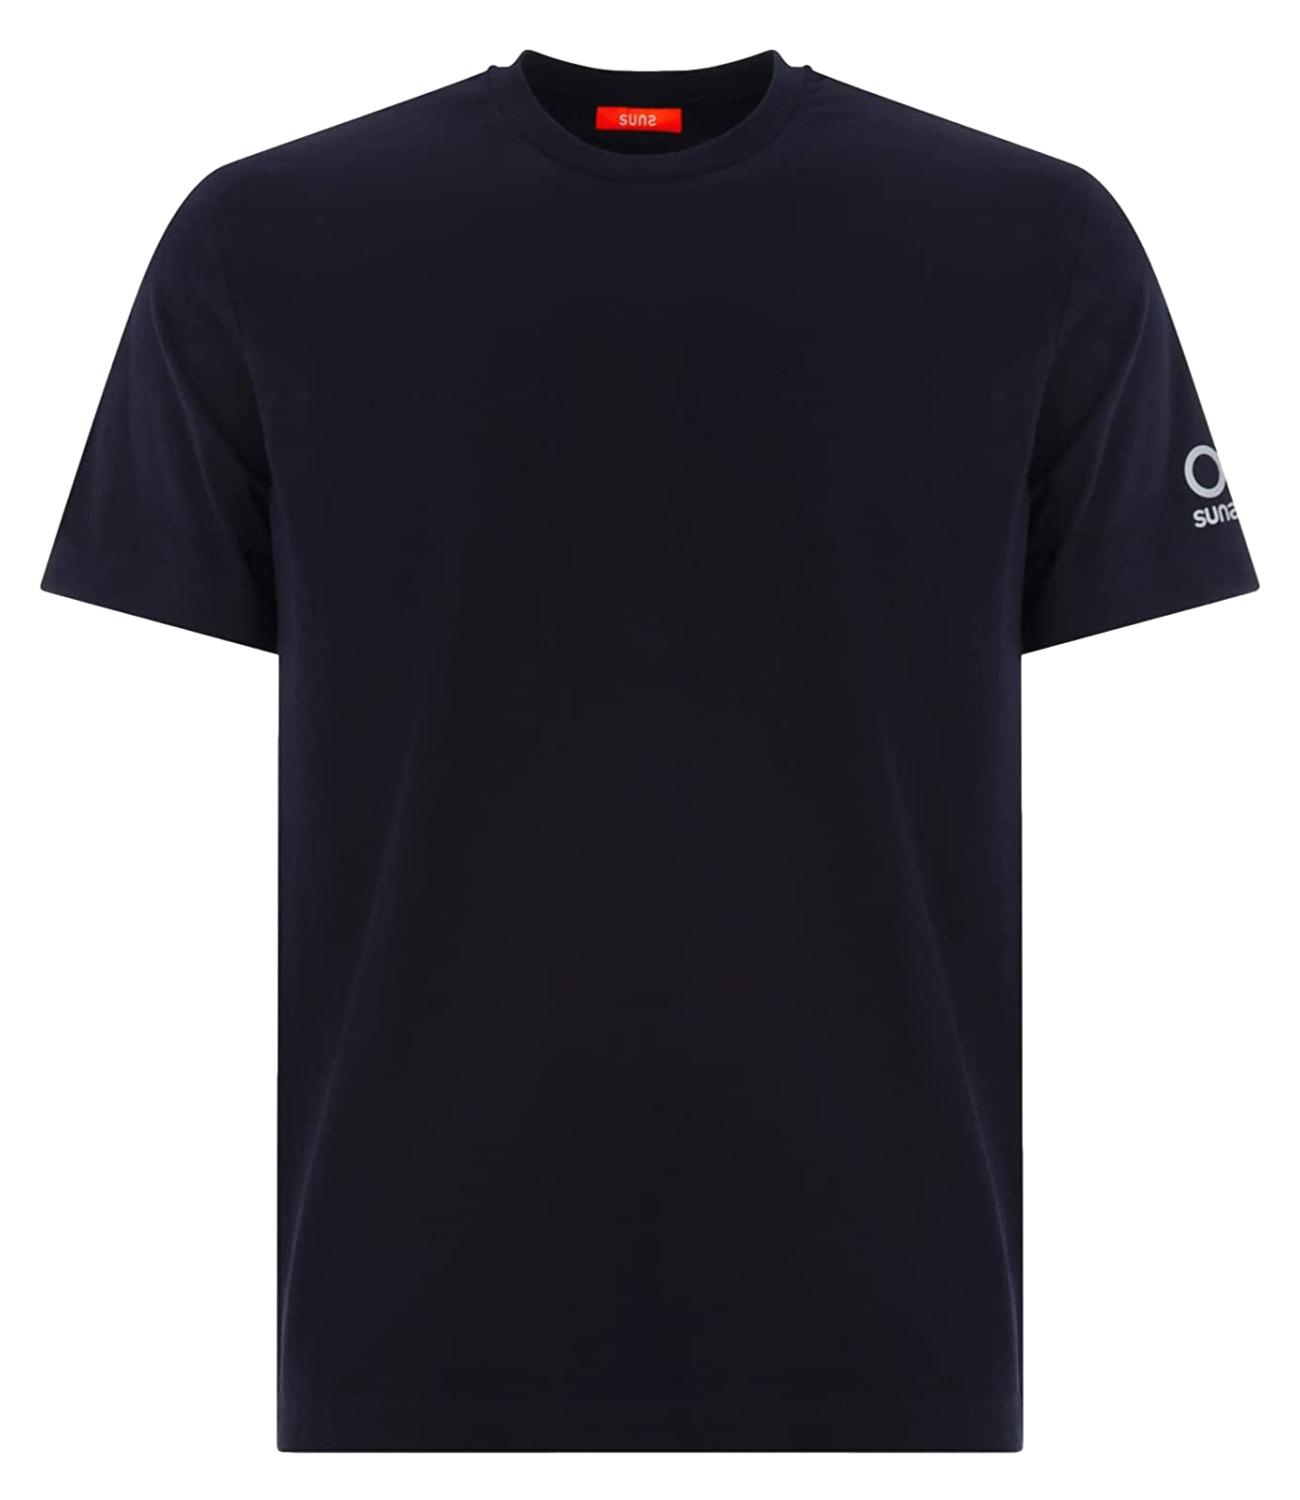 T-shirt blu navy SUNS in cotone con logo sul braccio